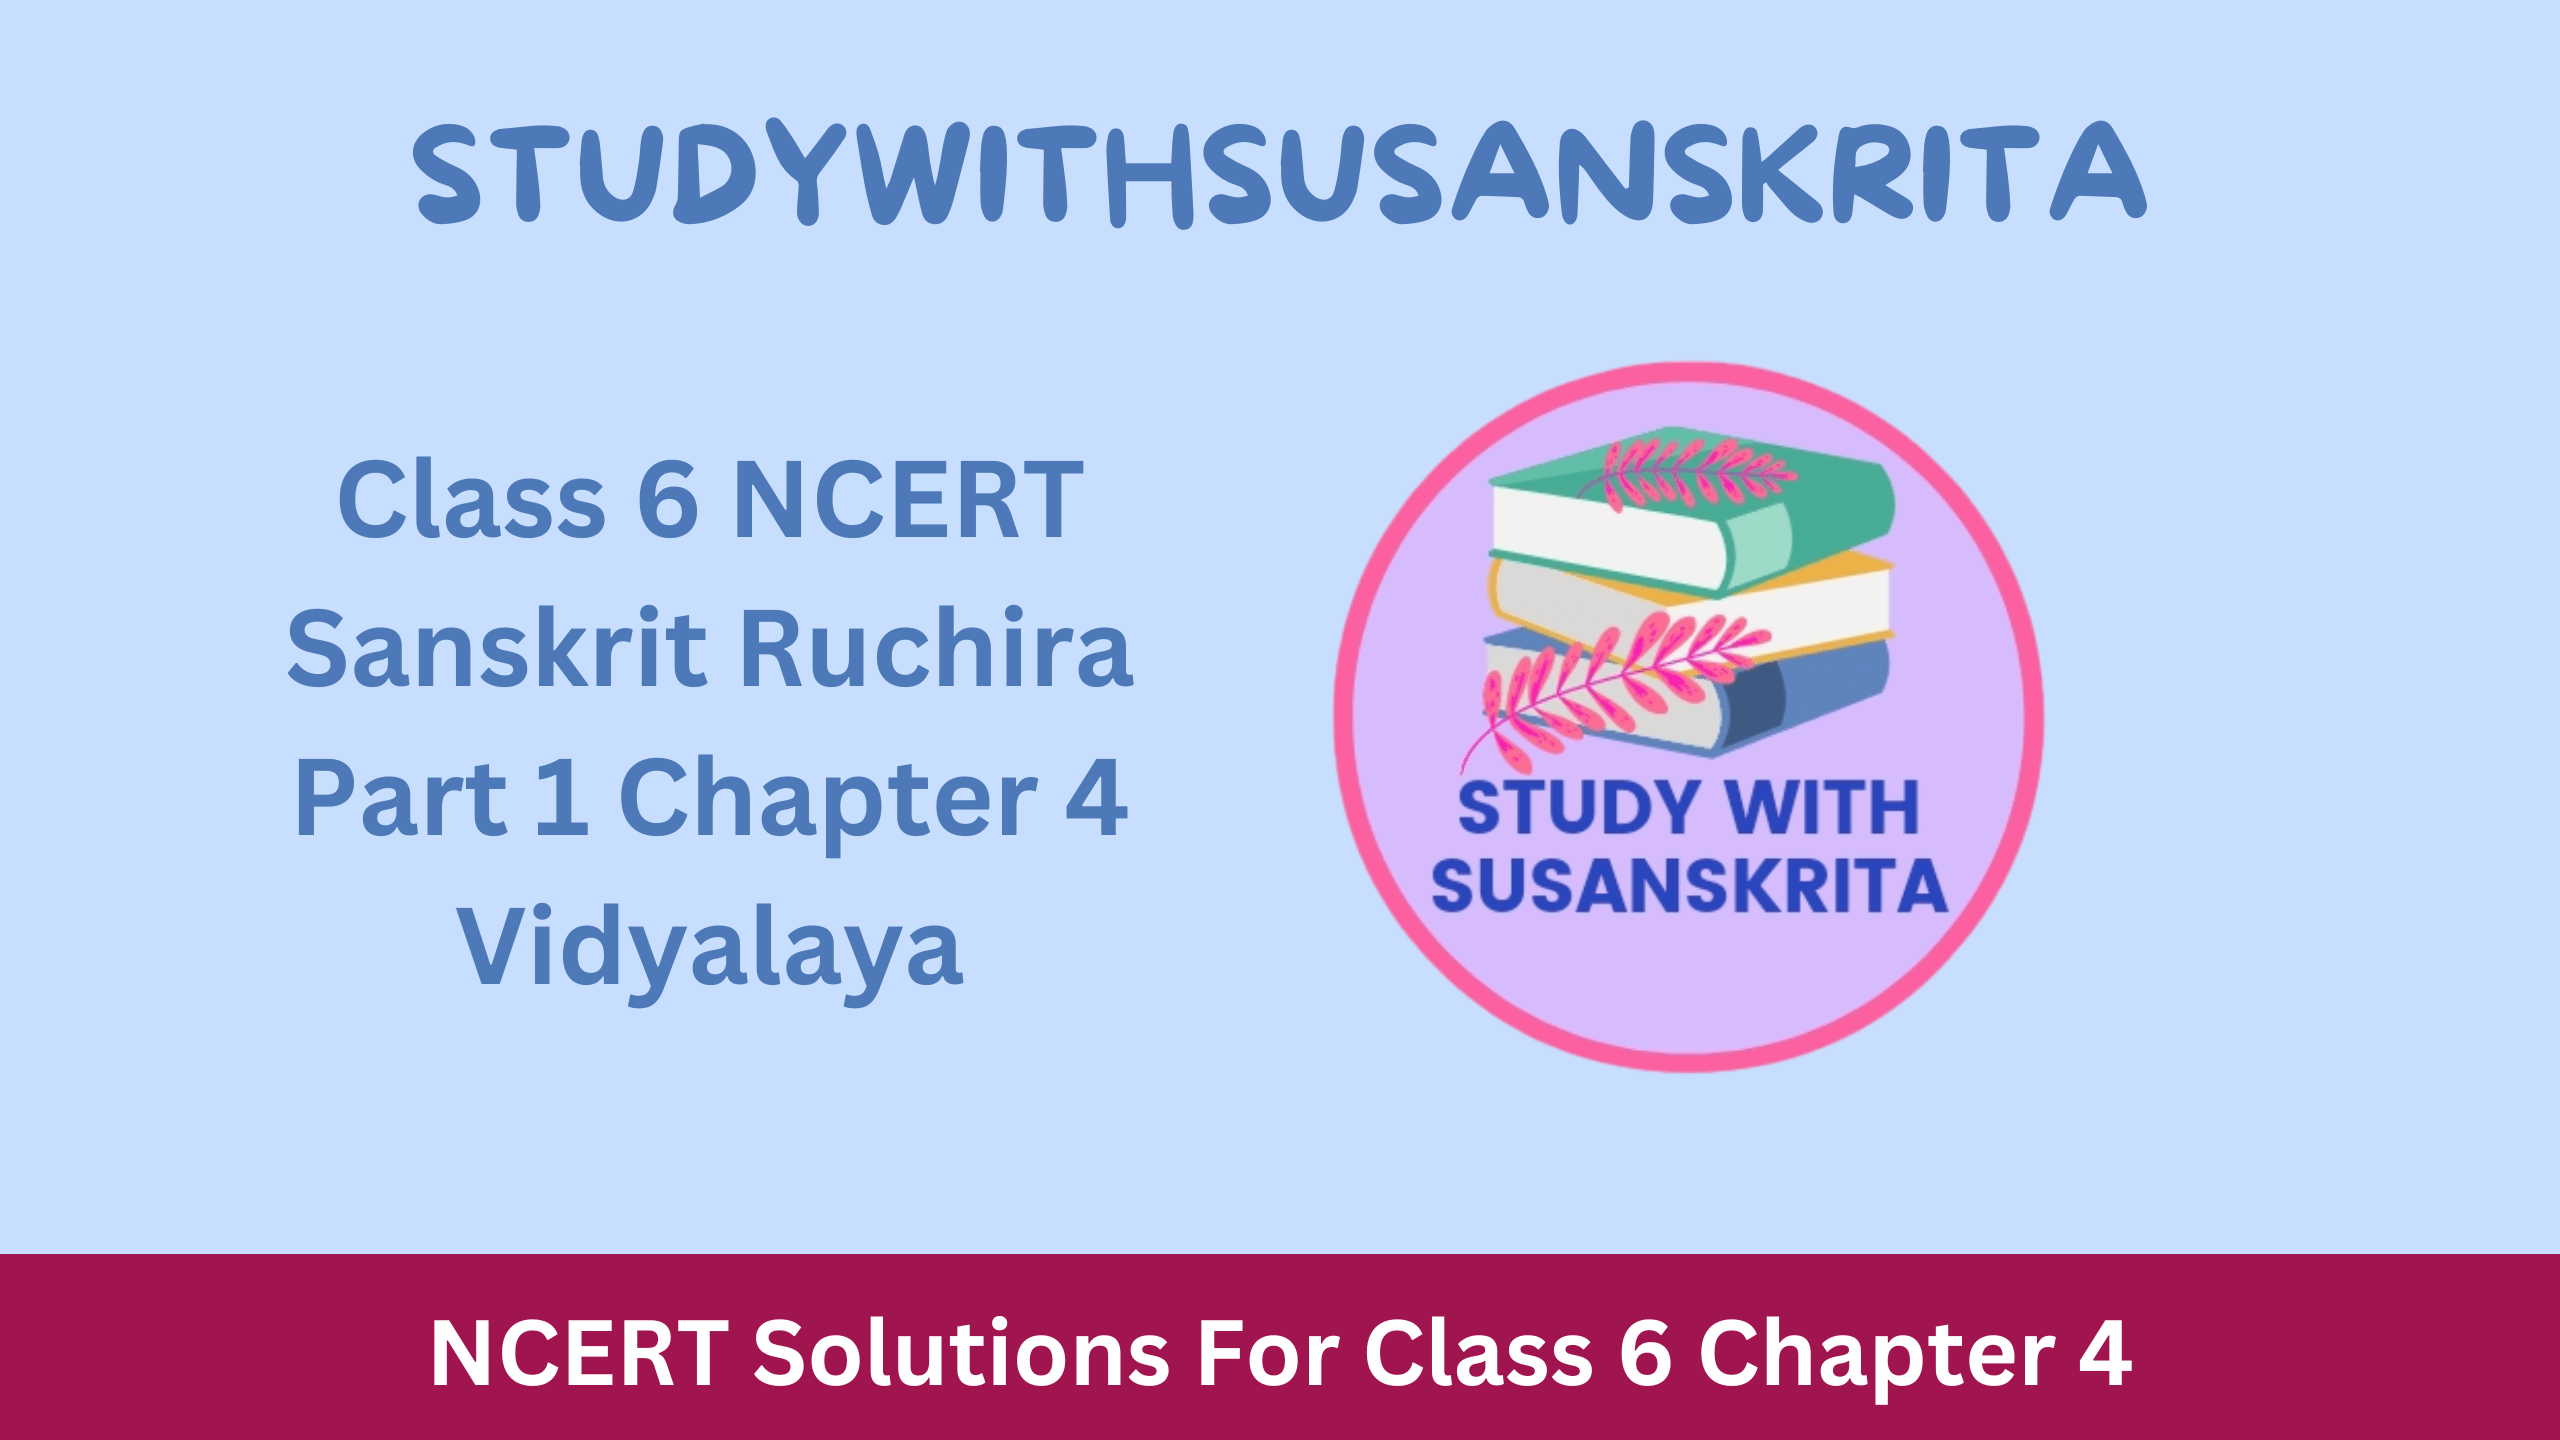 Class 6 NCERT Sanskrit Ruchira Part 1 Chapter 4 Vidyalaya